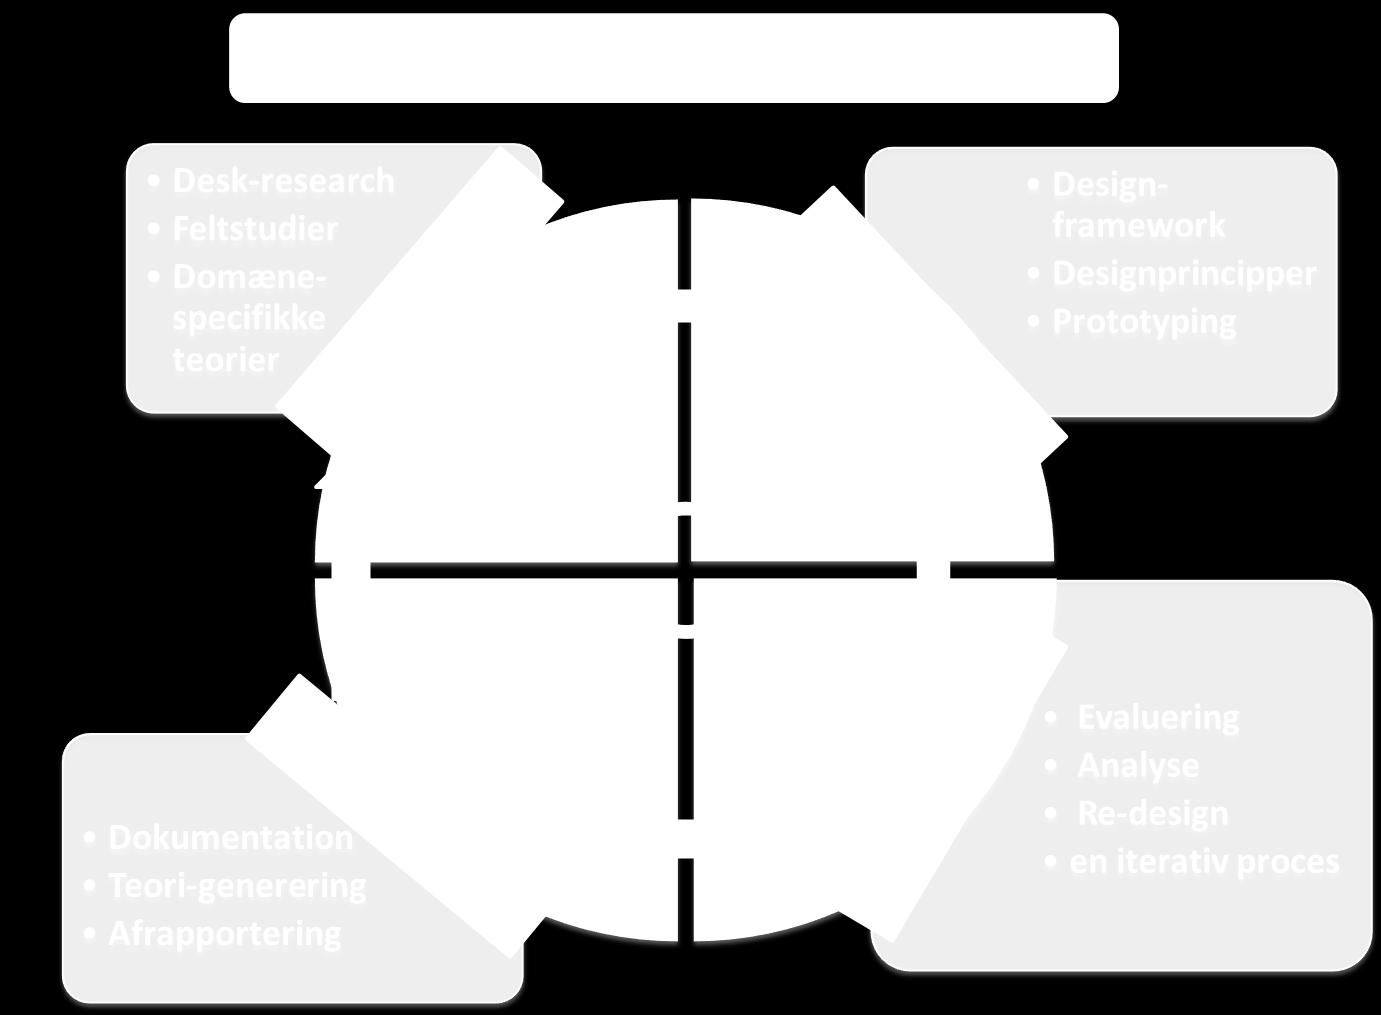 Figur 1. DBR innovationsmodel (ELYK projektet 2011).